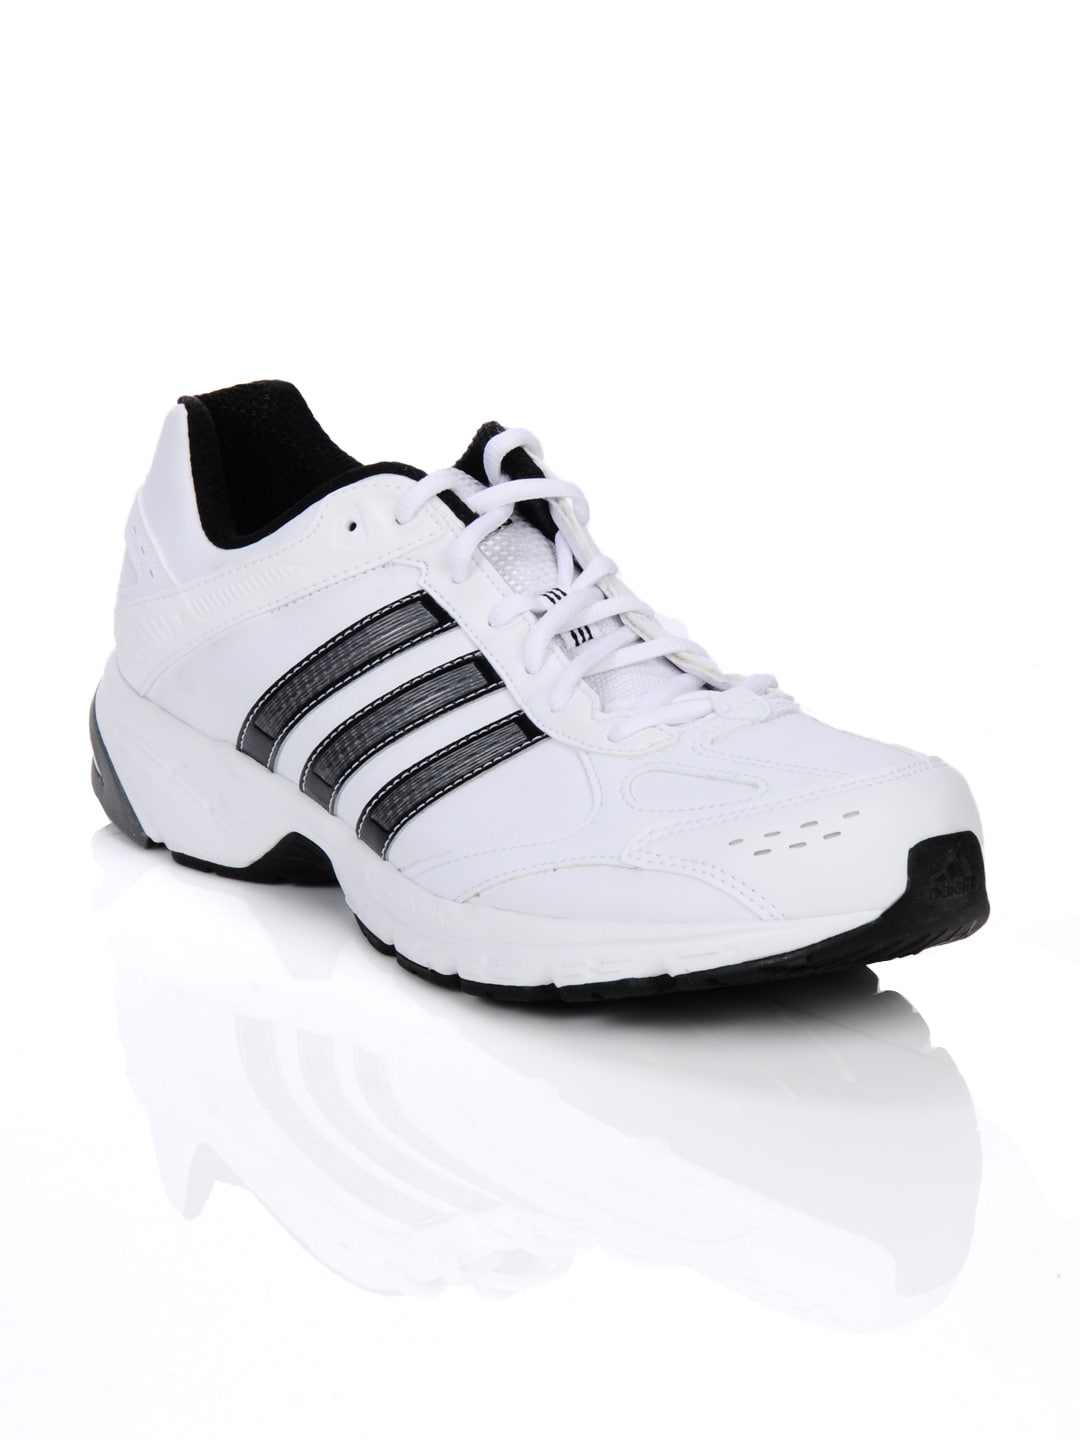 ADIDAS Men Duramo 4 Lea White Sports Shoes